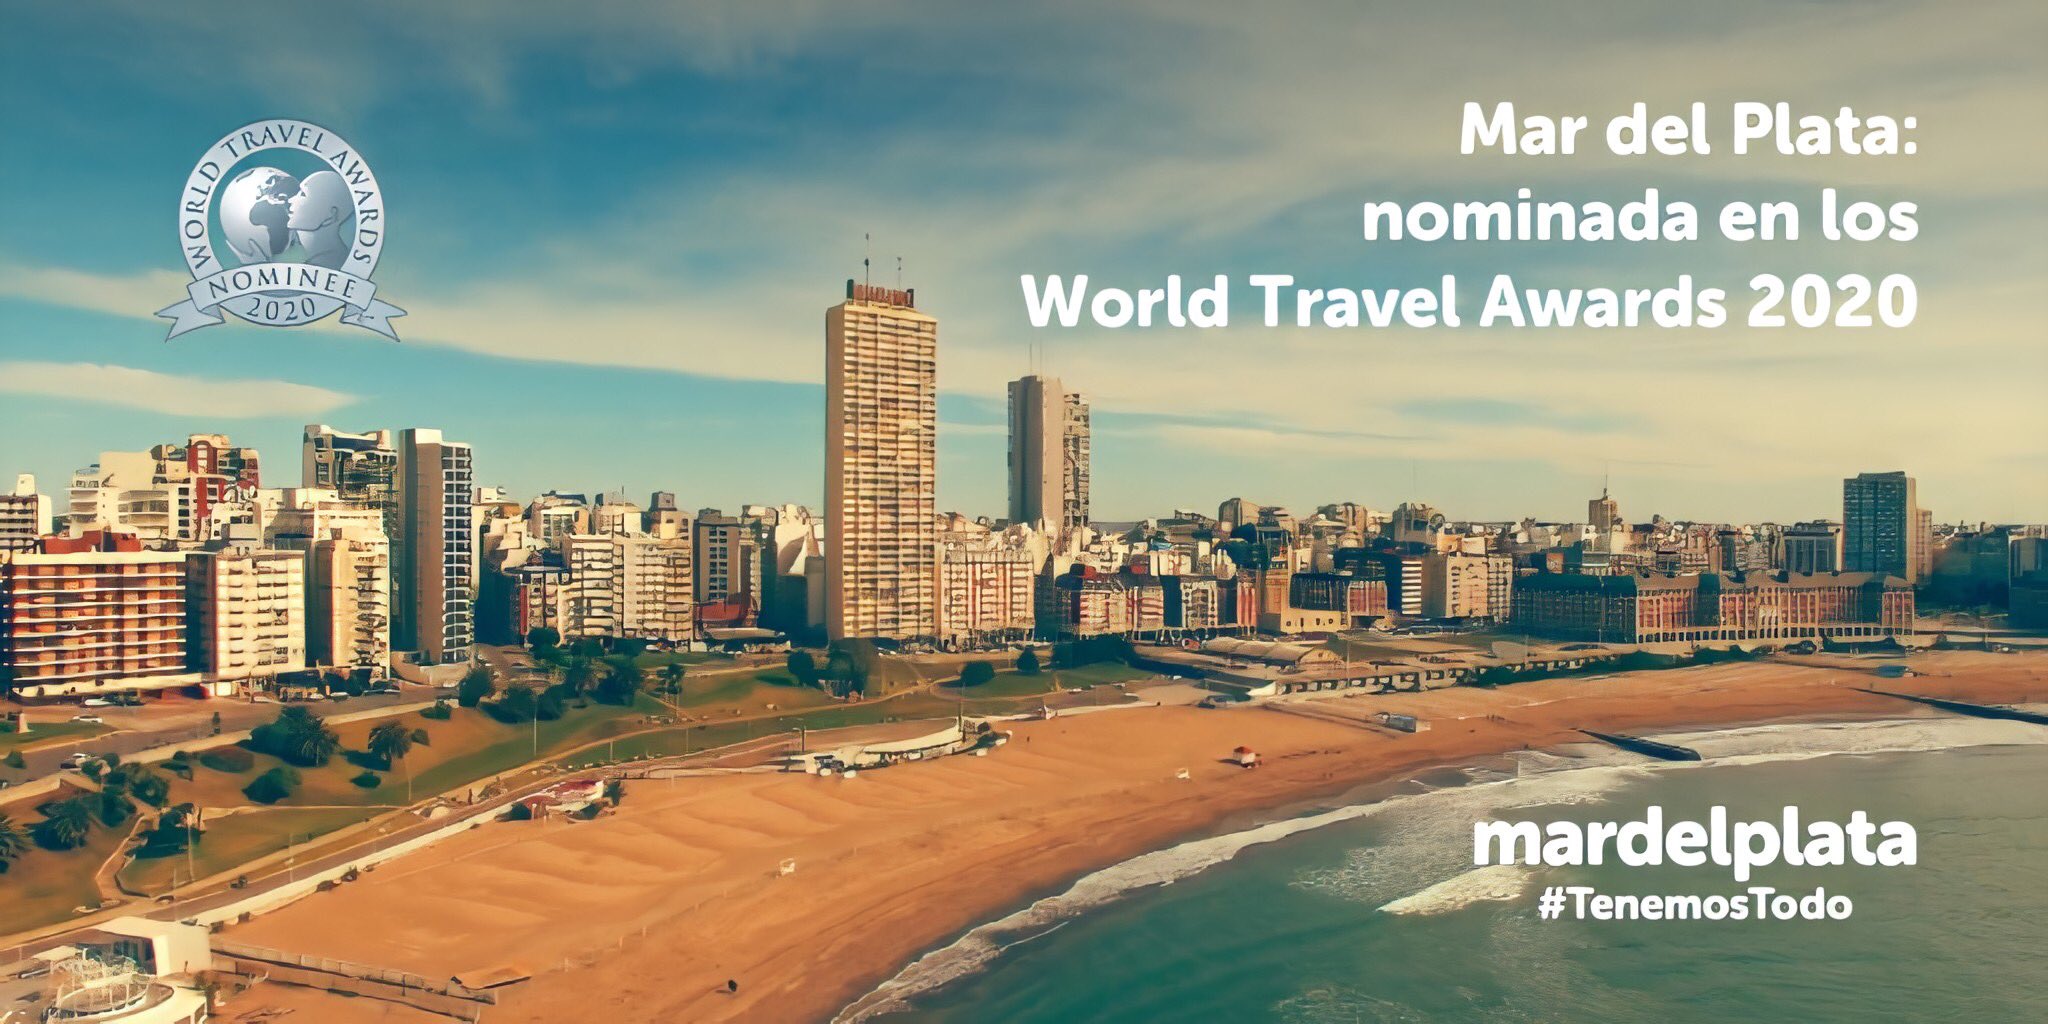 Mar del Plata está nominada en los World Travel Awards